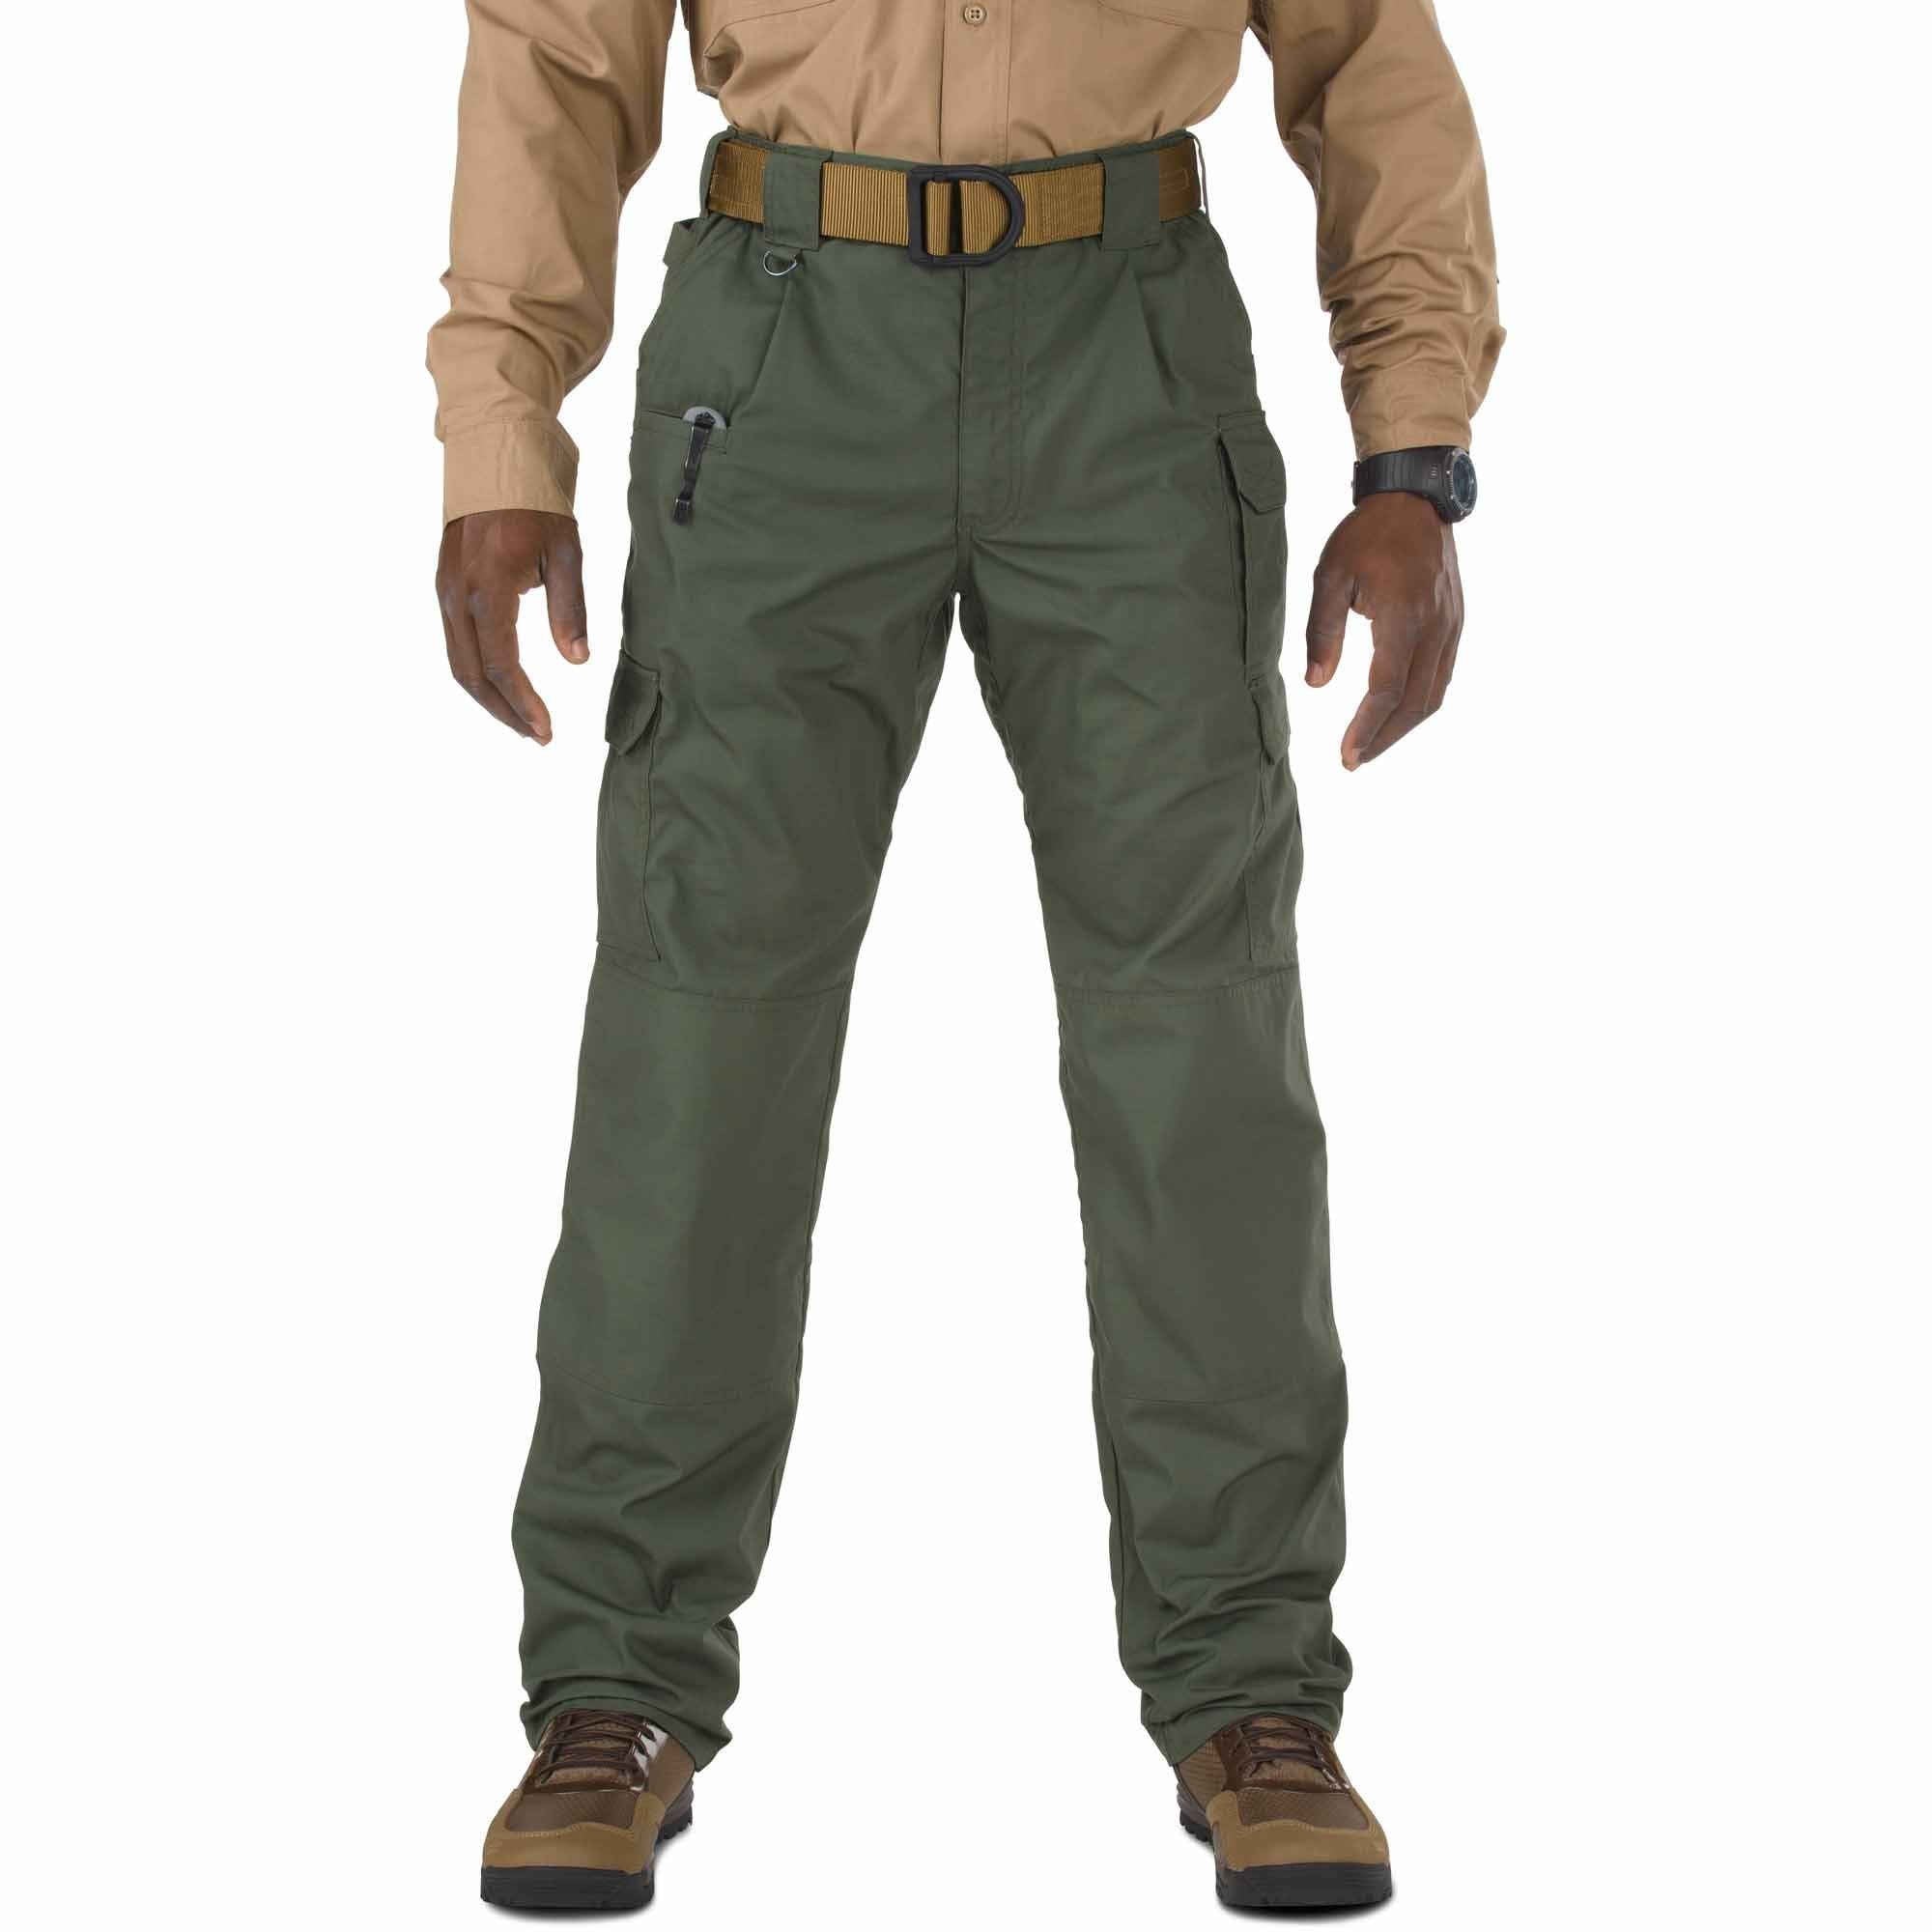 5.11 Tactical Taclite Pro Pants - TDU Green Pants 5.11 Tactical 28 30 Tactical Gear Supplier Tactical Distributors Australia